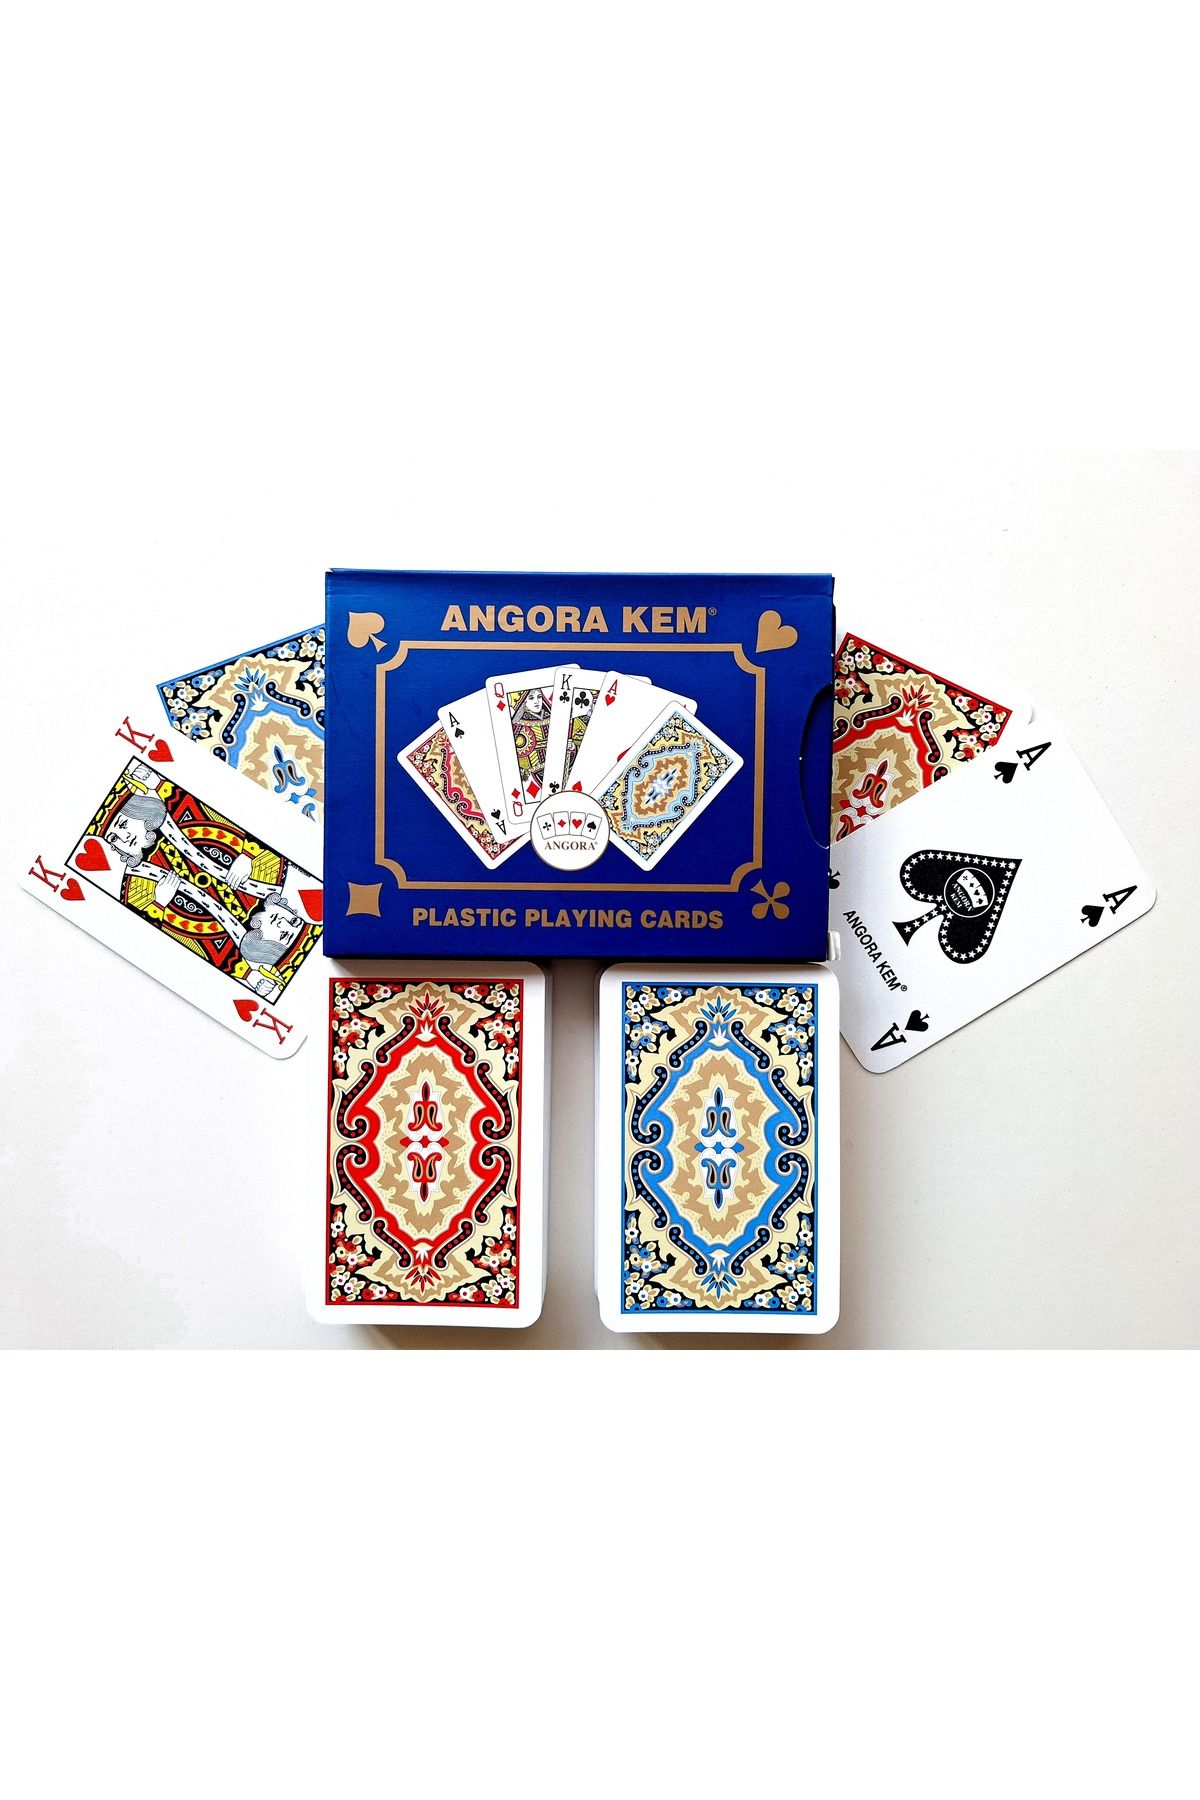 MSMETICARET Angora Kem Plastik Iskambil Oyun Kağıdı Biriç Oyun Kağıdı Çift Deste - Plastic Playing Cards